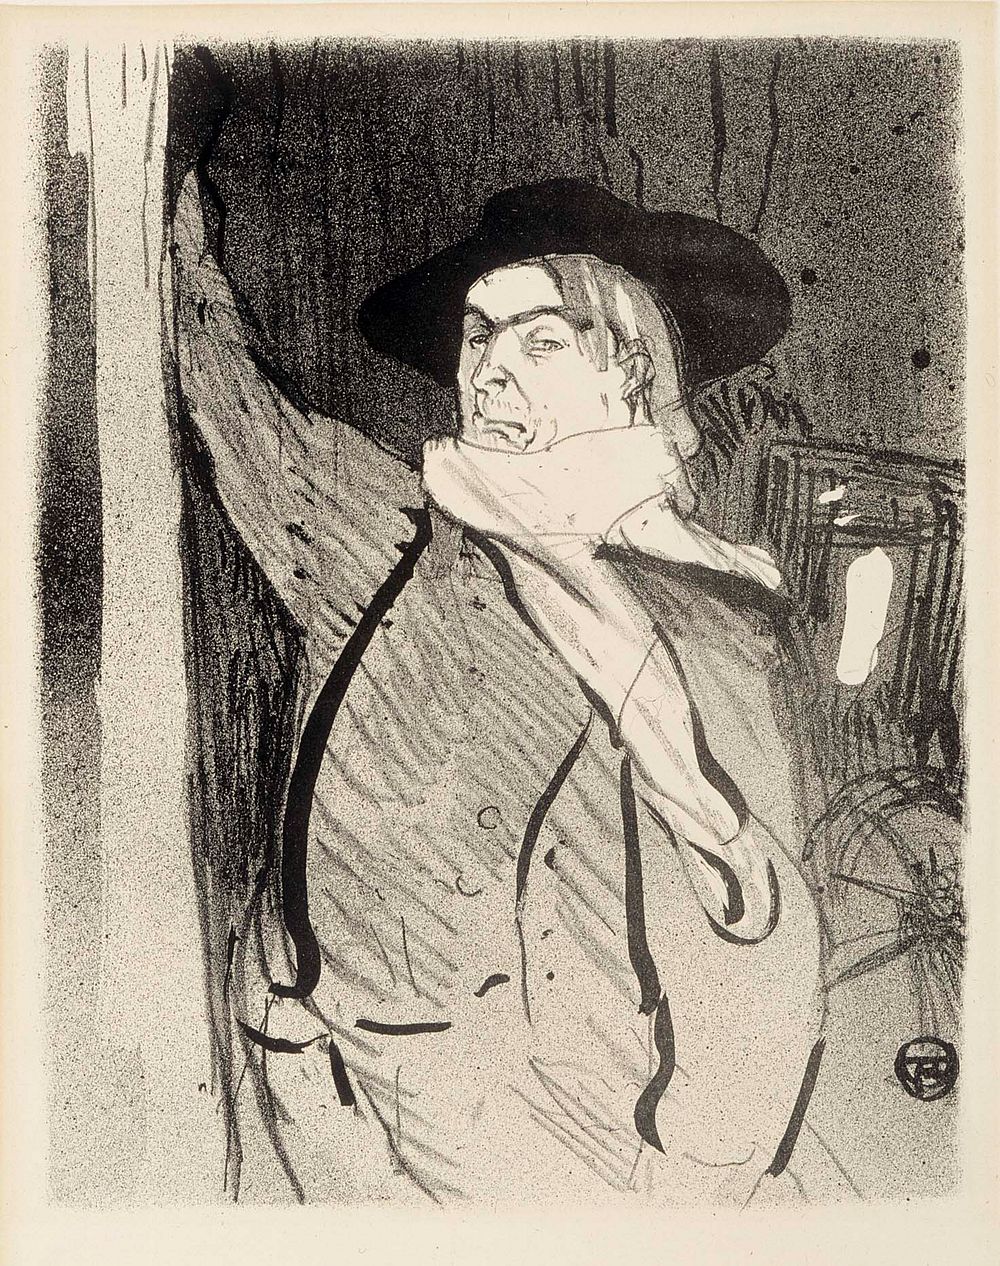 Aristide bruant (1893) by Henri de Toulouse-Lautrec